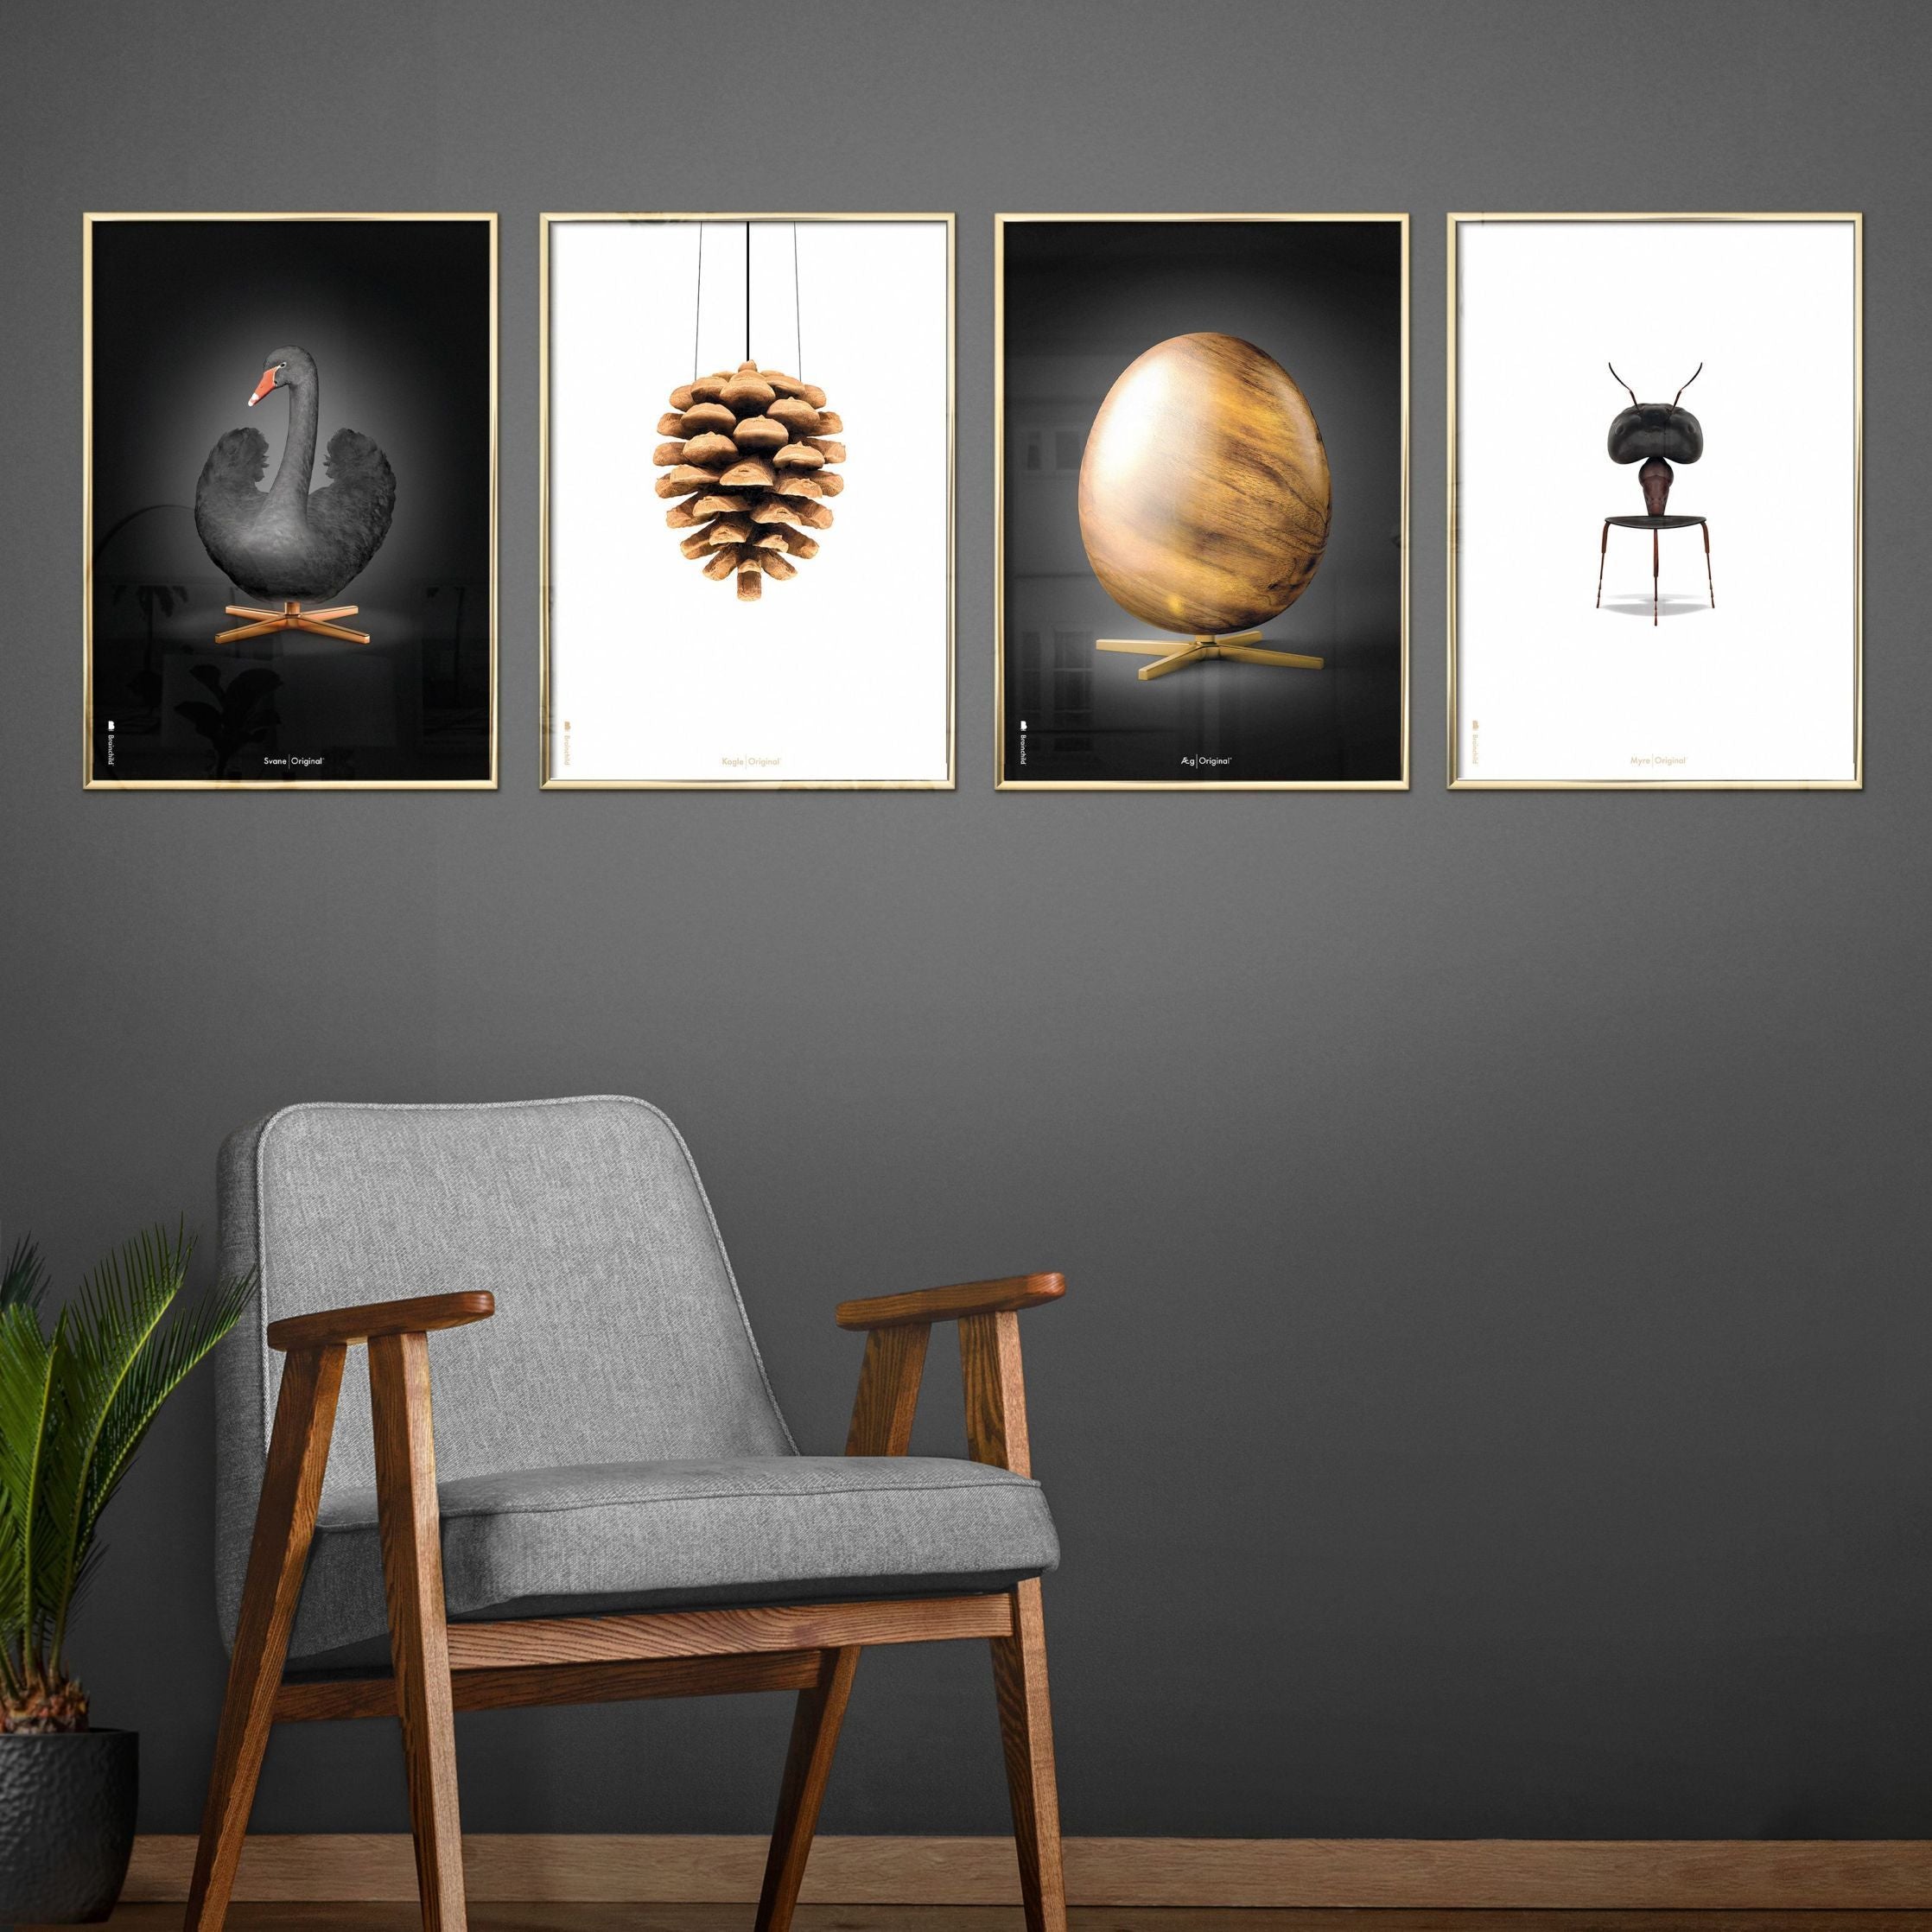 Poster classico di formiche di origine, telaio in legno scuro 30x40 cm, sfondo bianco